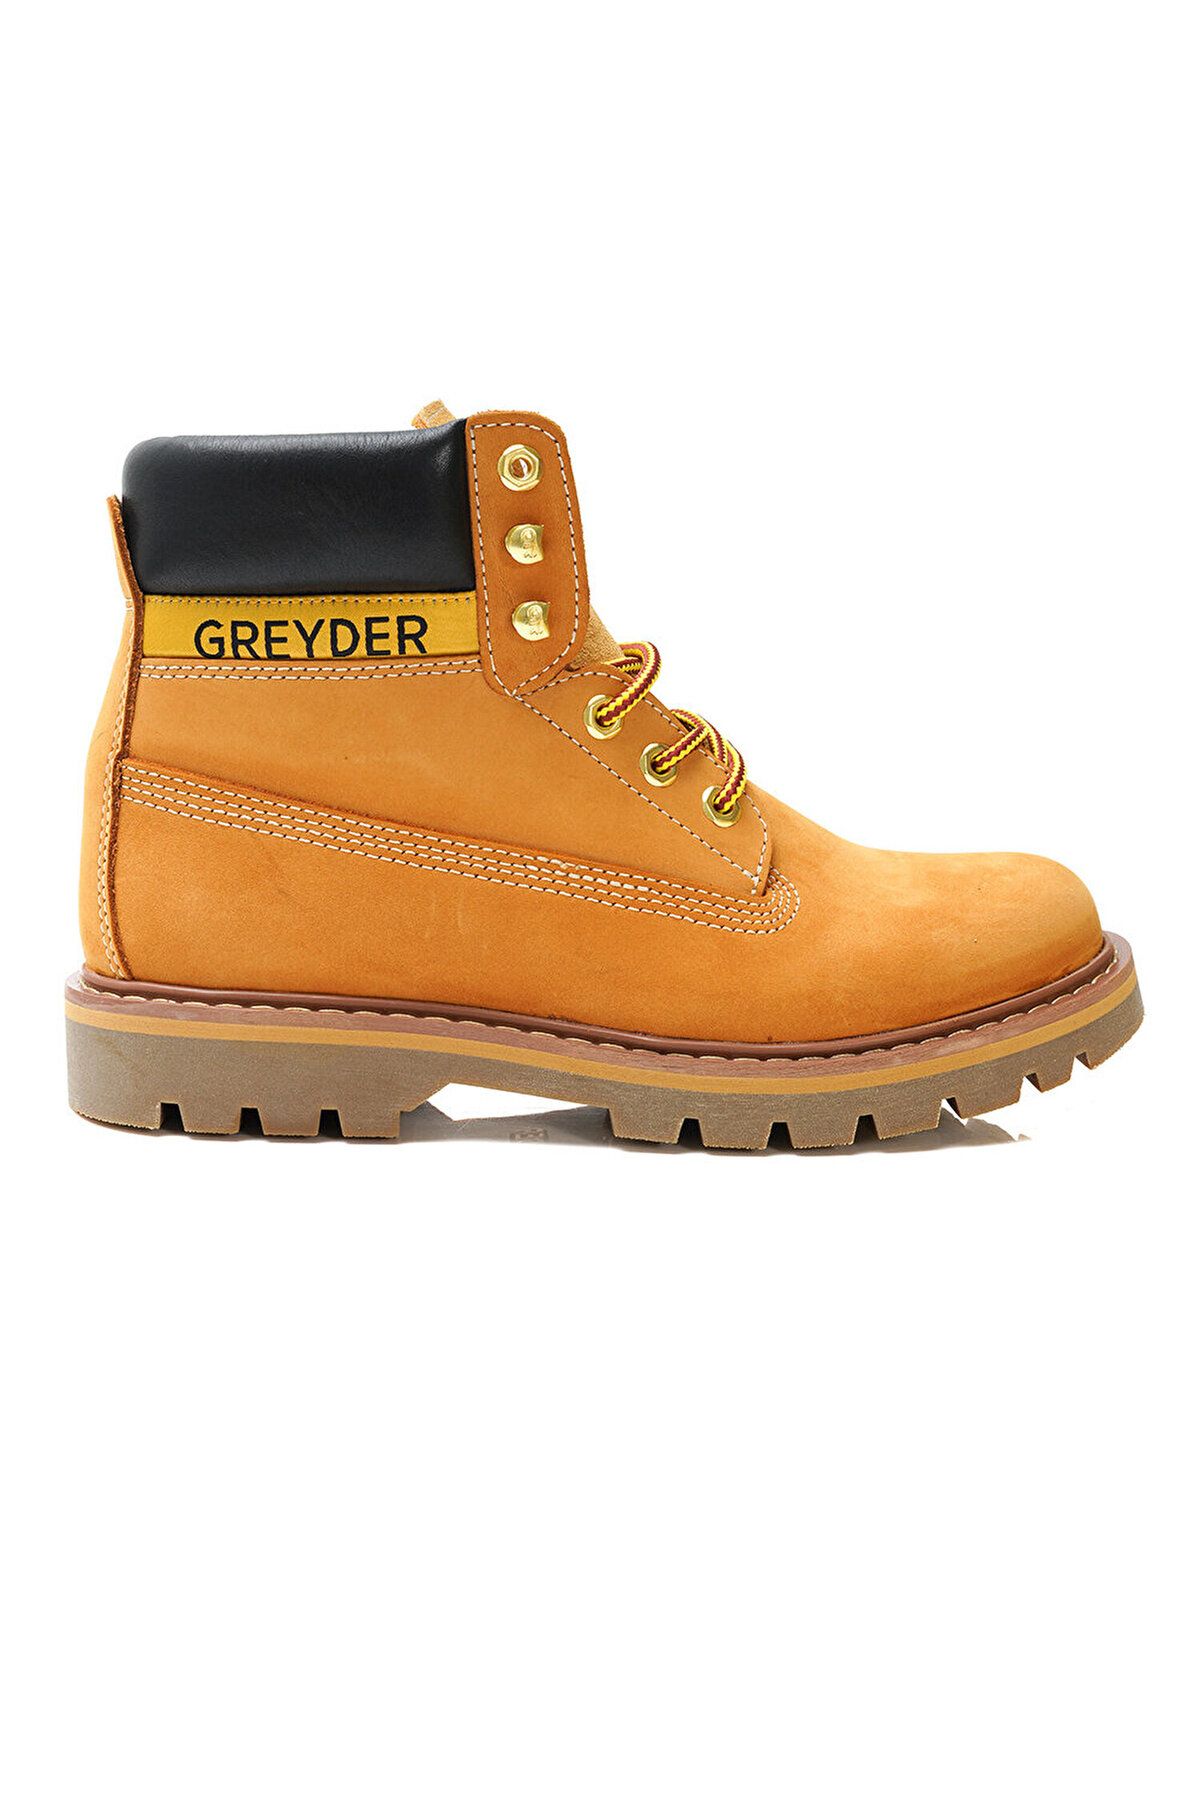 Greyder 10450 Sarı Renk Hakiki Nubuk Deri Bağcıklı Erkek Bot